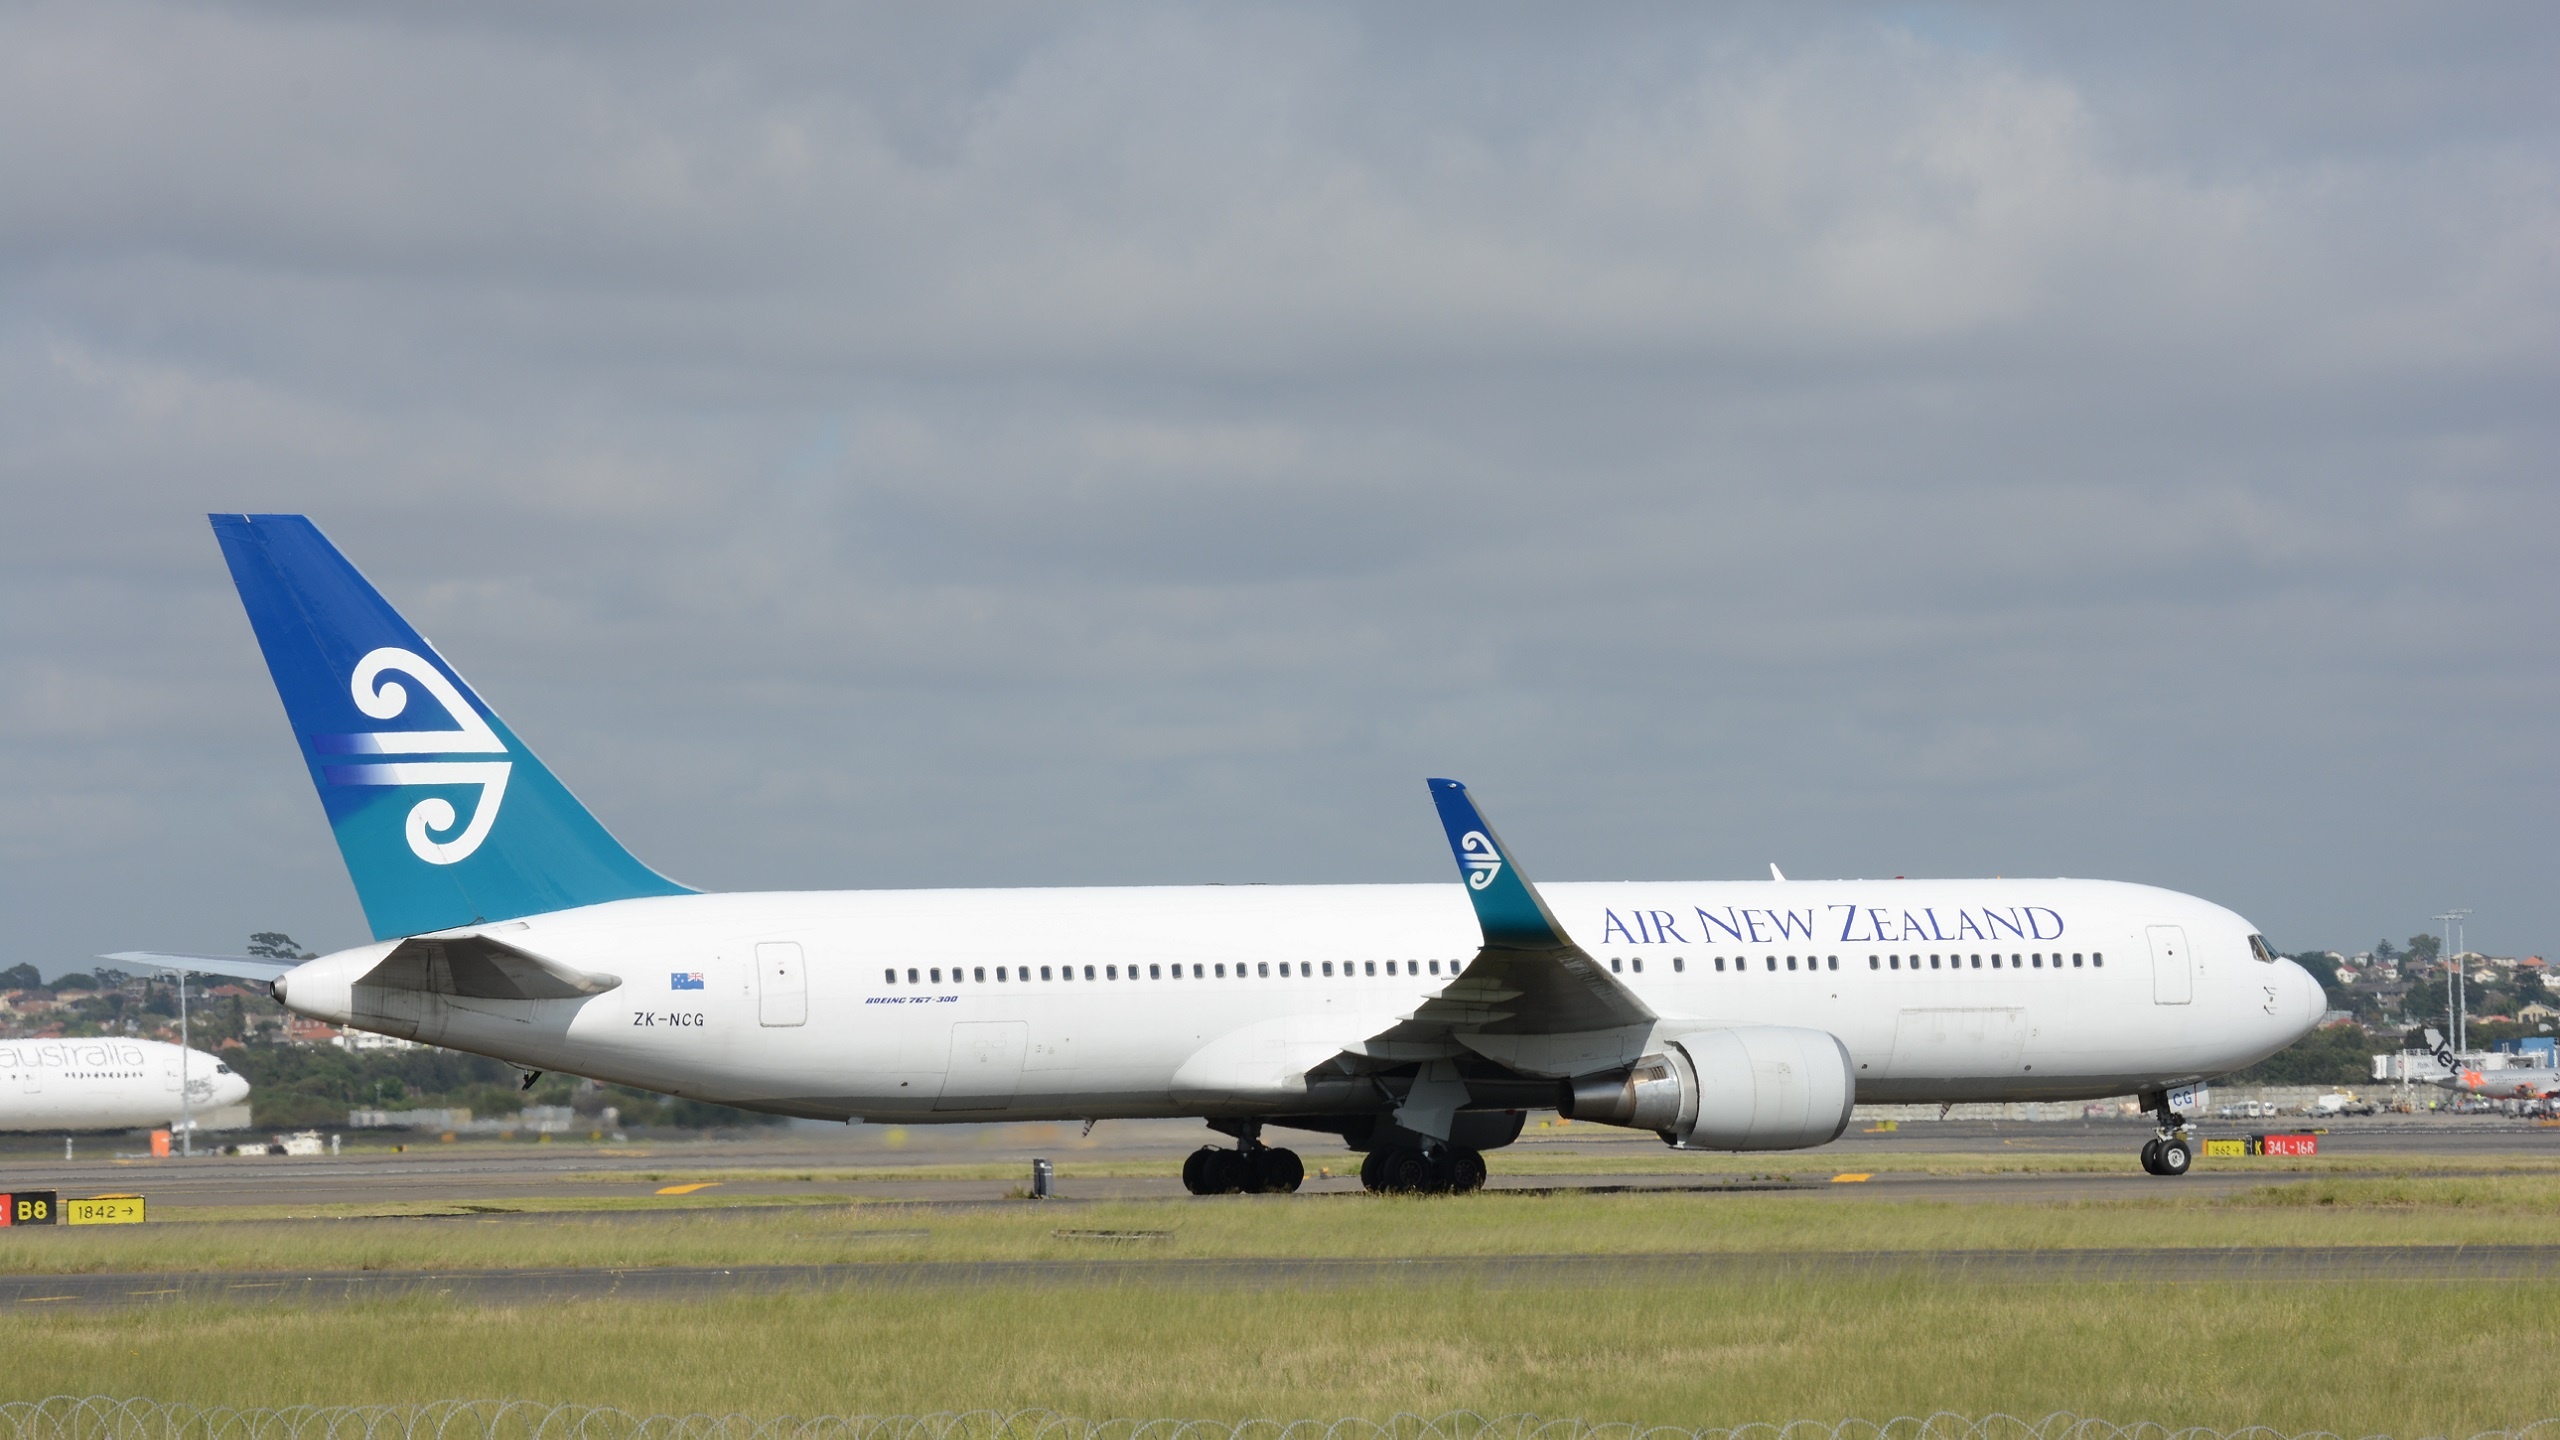 Air New Zealand Group, Boeing 767, 4k ultra HD, High-resolution image, 2560x1440 HD Desktop